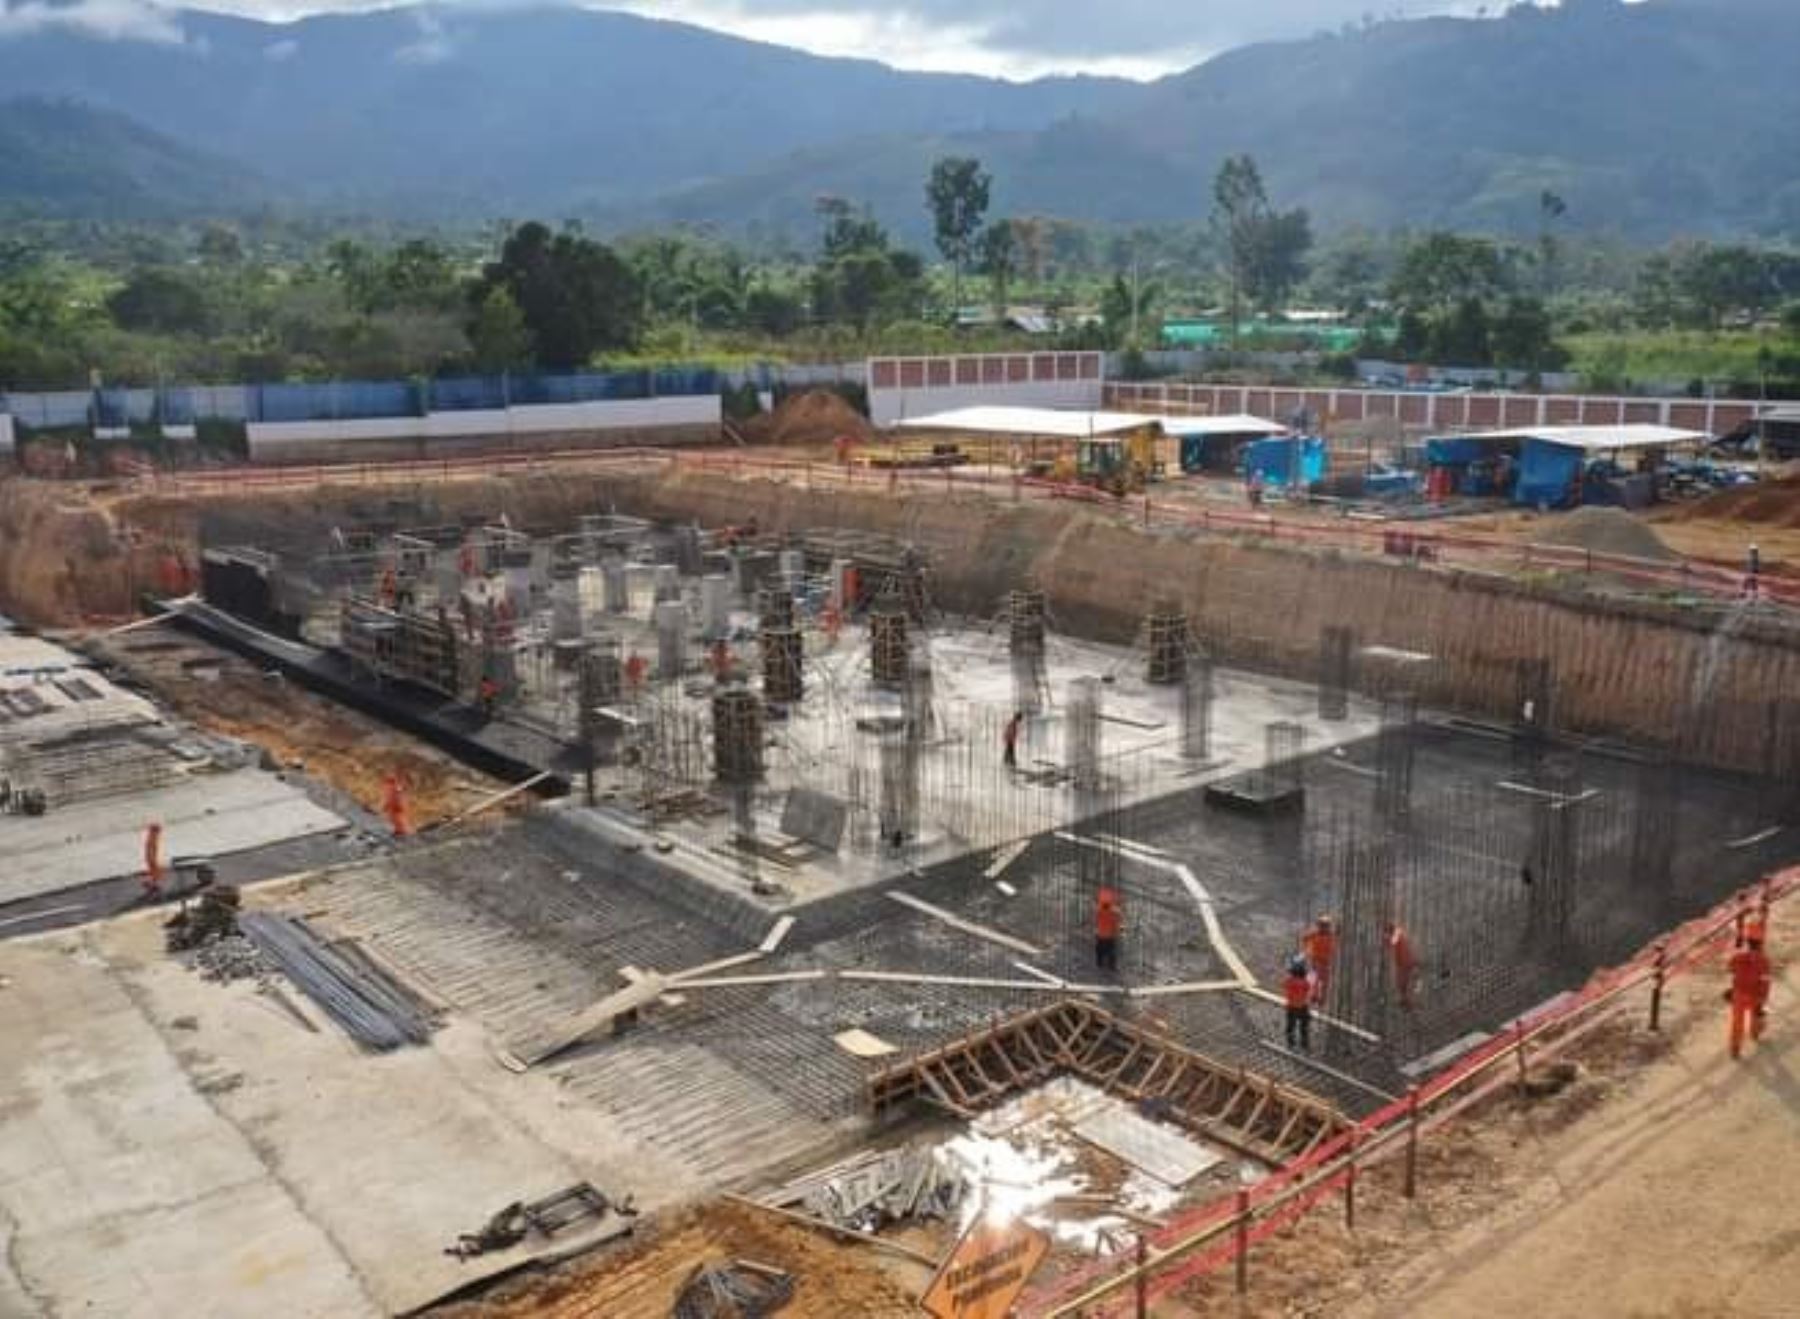 Contraloría identifica pago irregular de S/ 8 millones en construcción de hospital que inicialmente se iba a edificar en Satipo y ahora se ejecuta en distrito de Río Negro, región Junín.